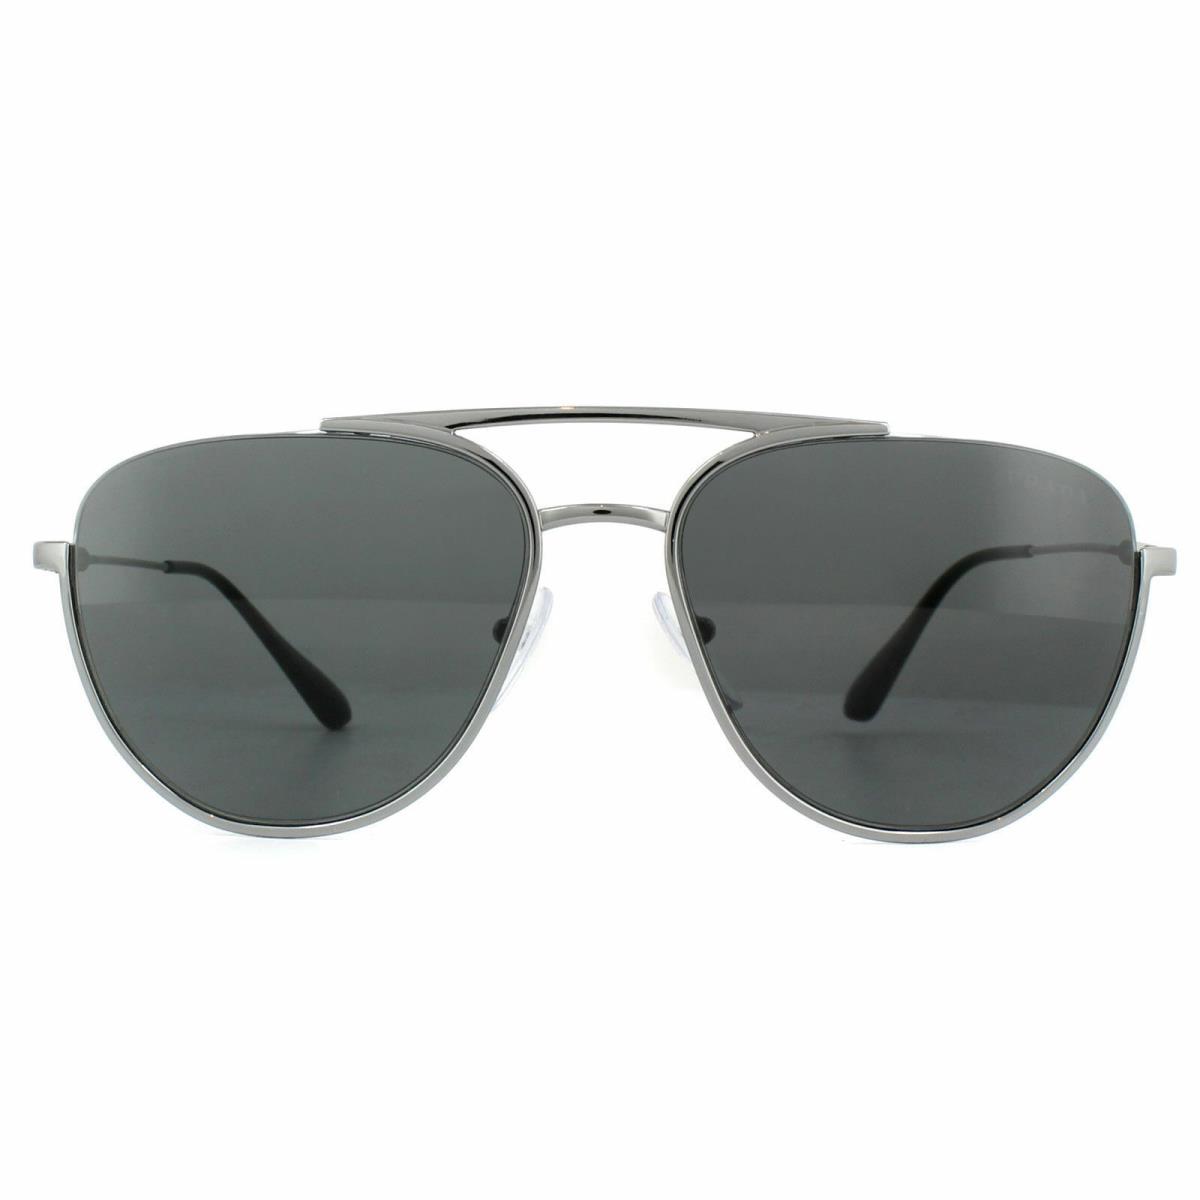 Prada sunglasses Aviator - Gunmetal Frame, Grey Lens 0